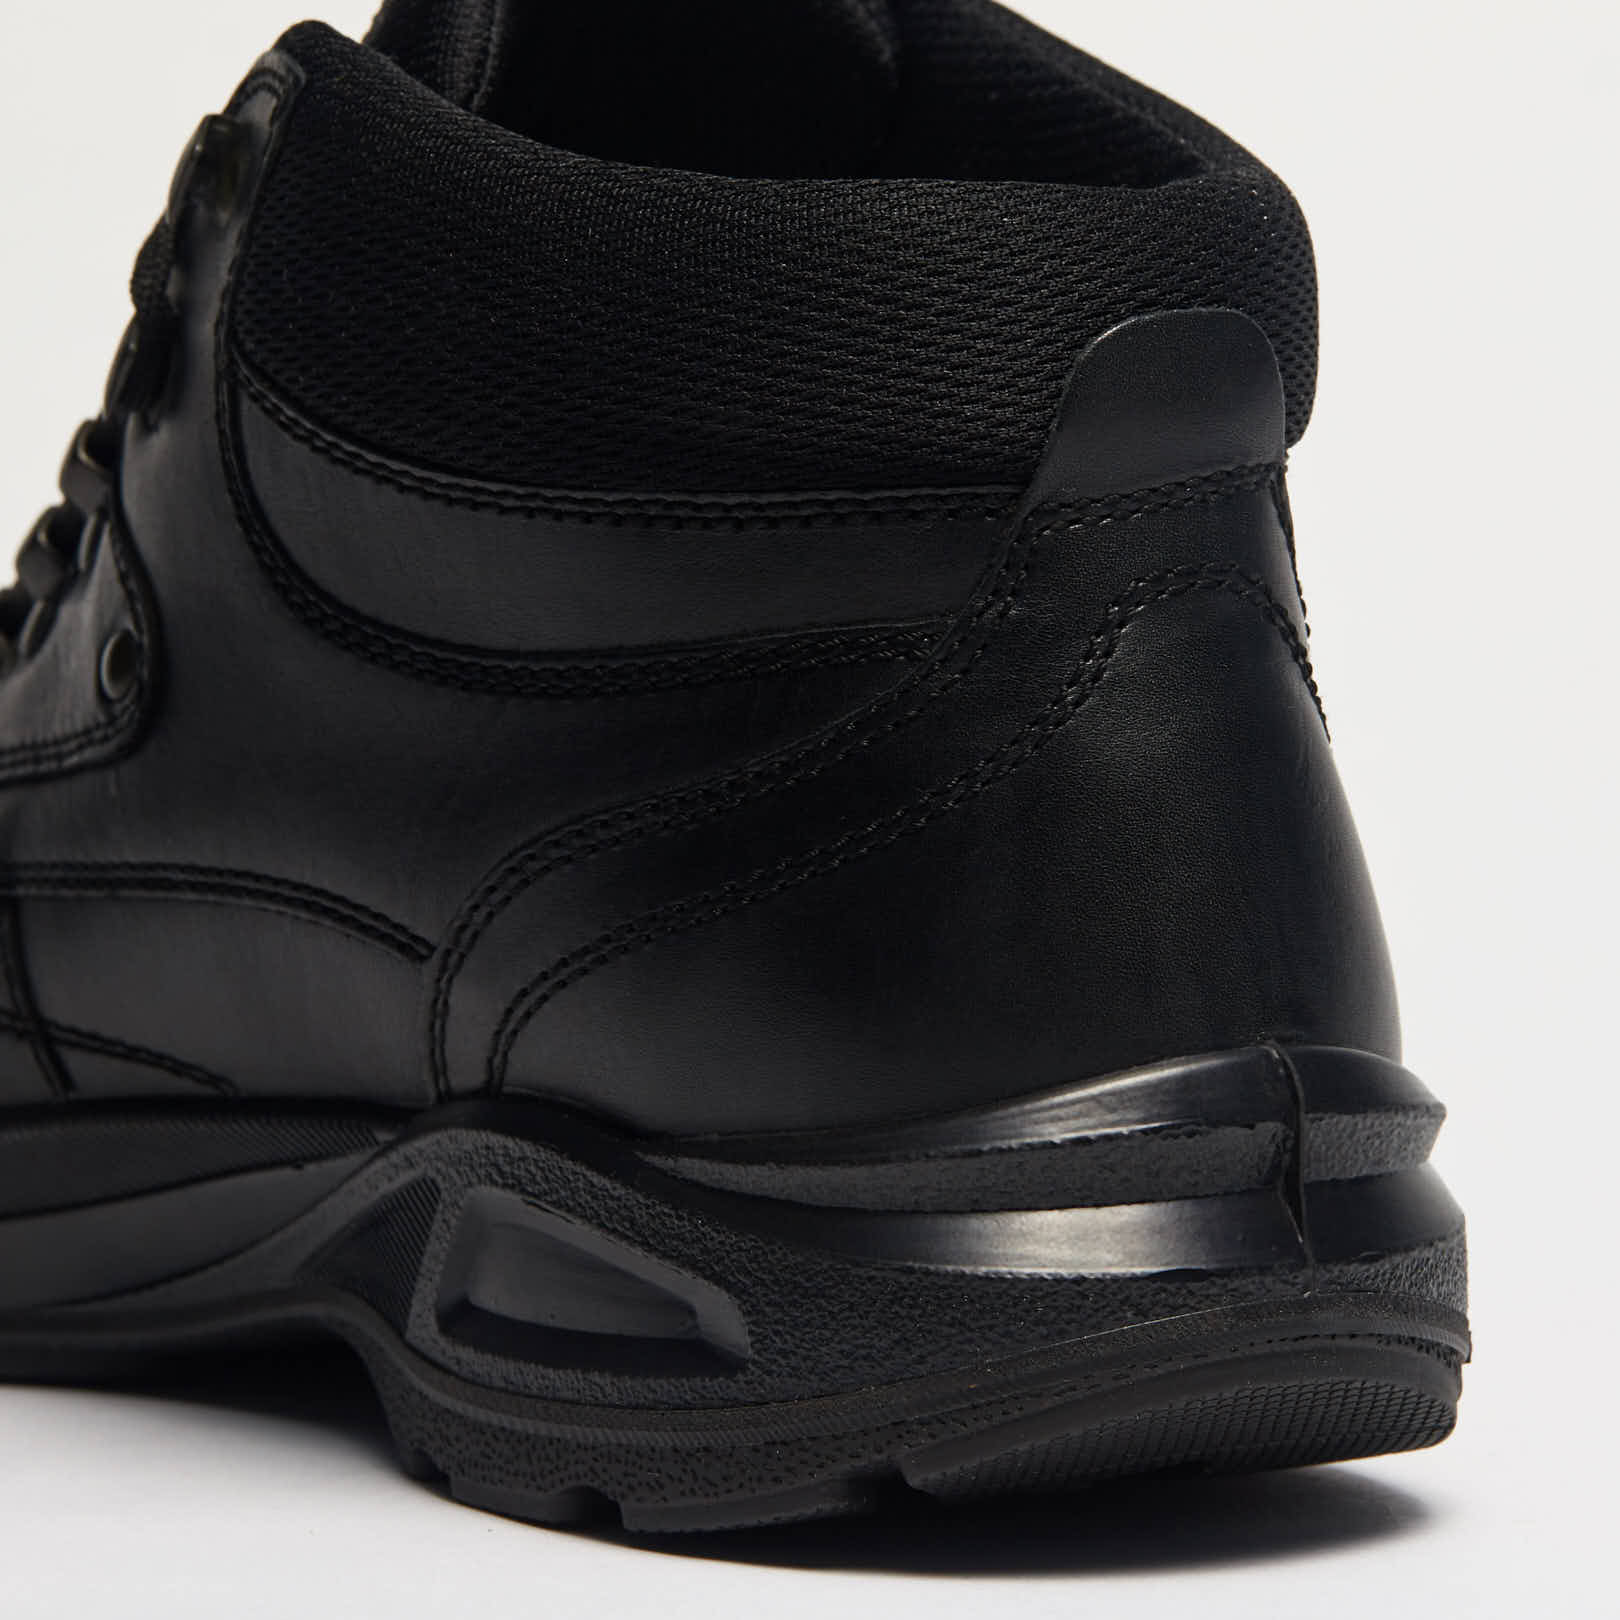 Ботинки мужские RINGO (цвет черный, натуральная кожа) — купить по цене 5390р. в интернет-магазине RALF RINGER